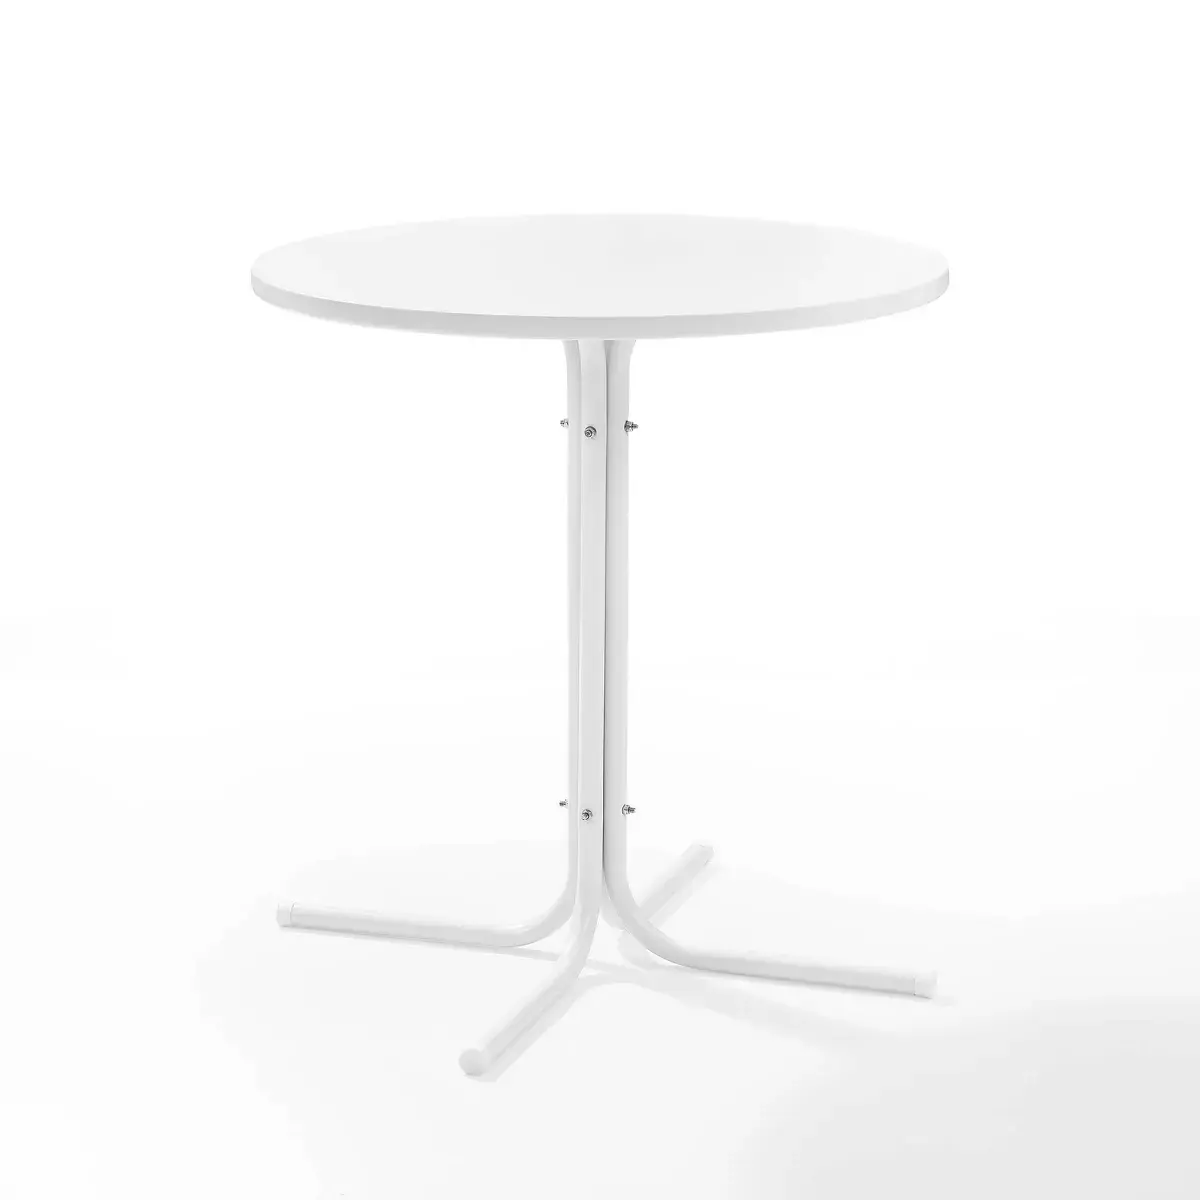 Mesa de centro redonda blanca moderna y elegante redonda versátil contemporánea, diseño minimalista con base de metal resistente